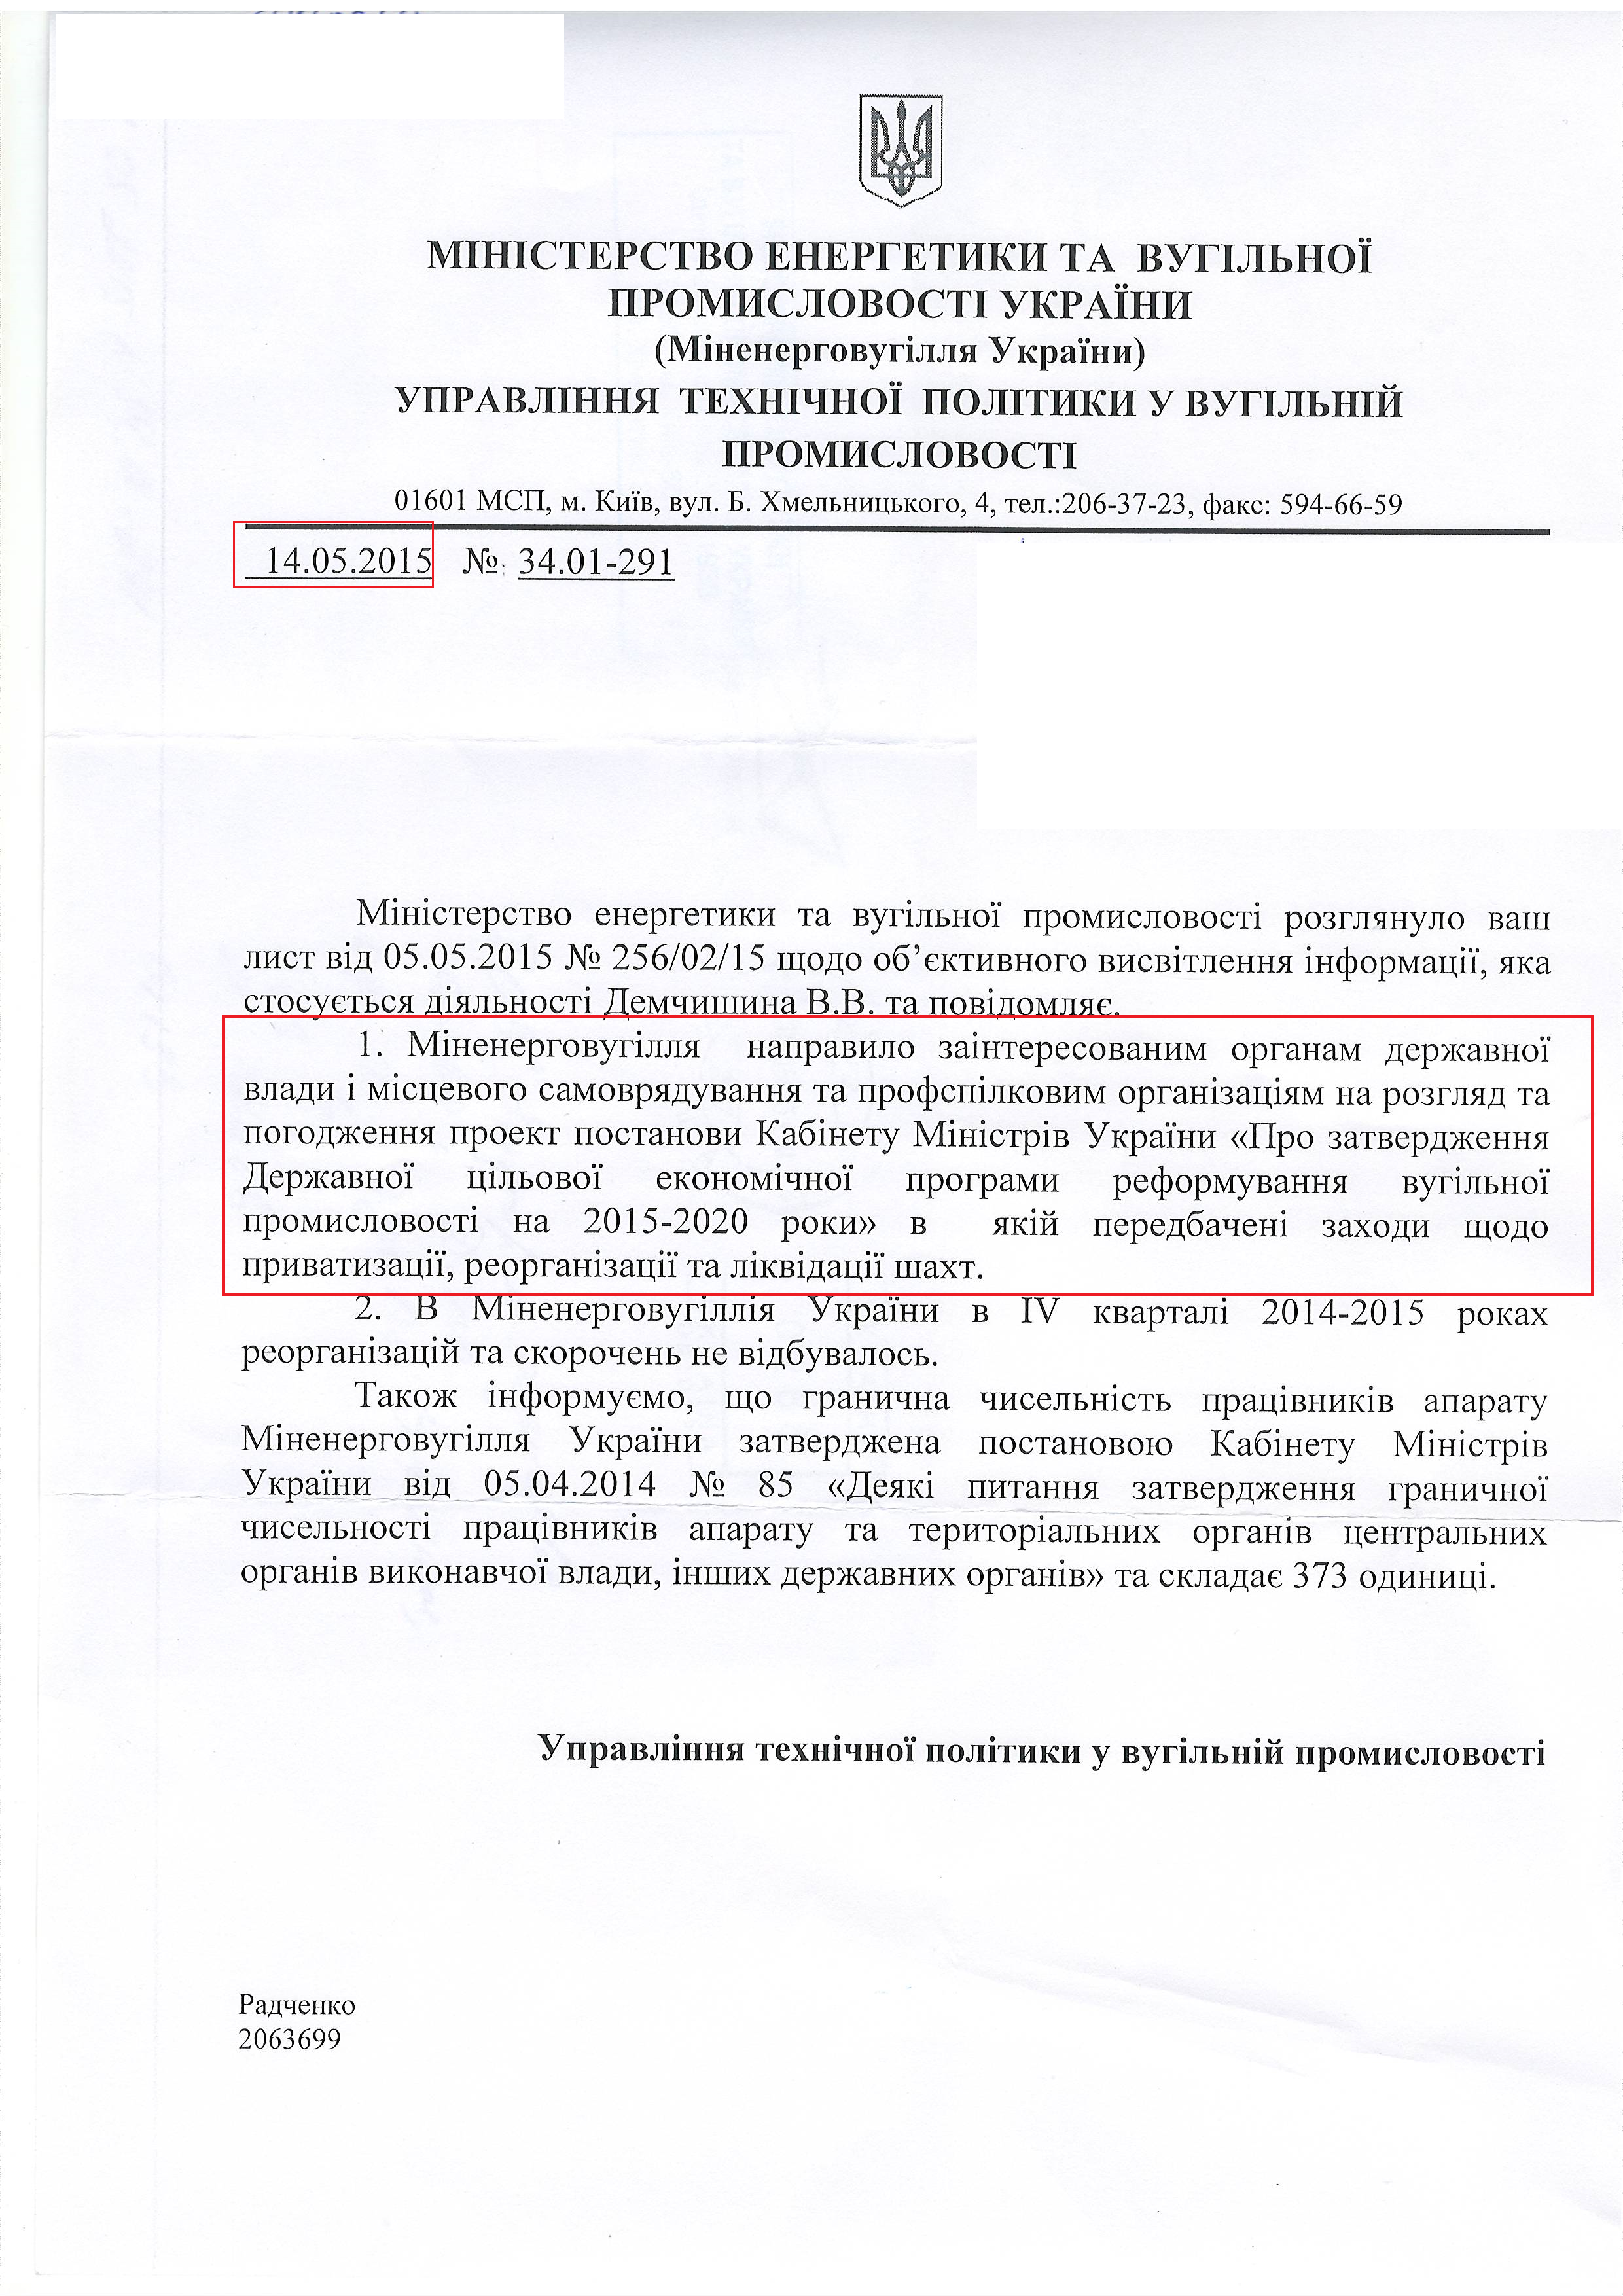  лист міністерства енергетики та вугільної промисловості України від 14 травня 2015 року,